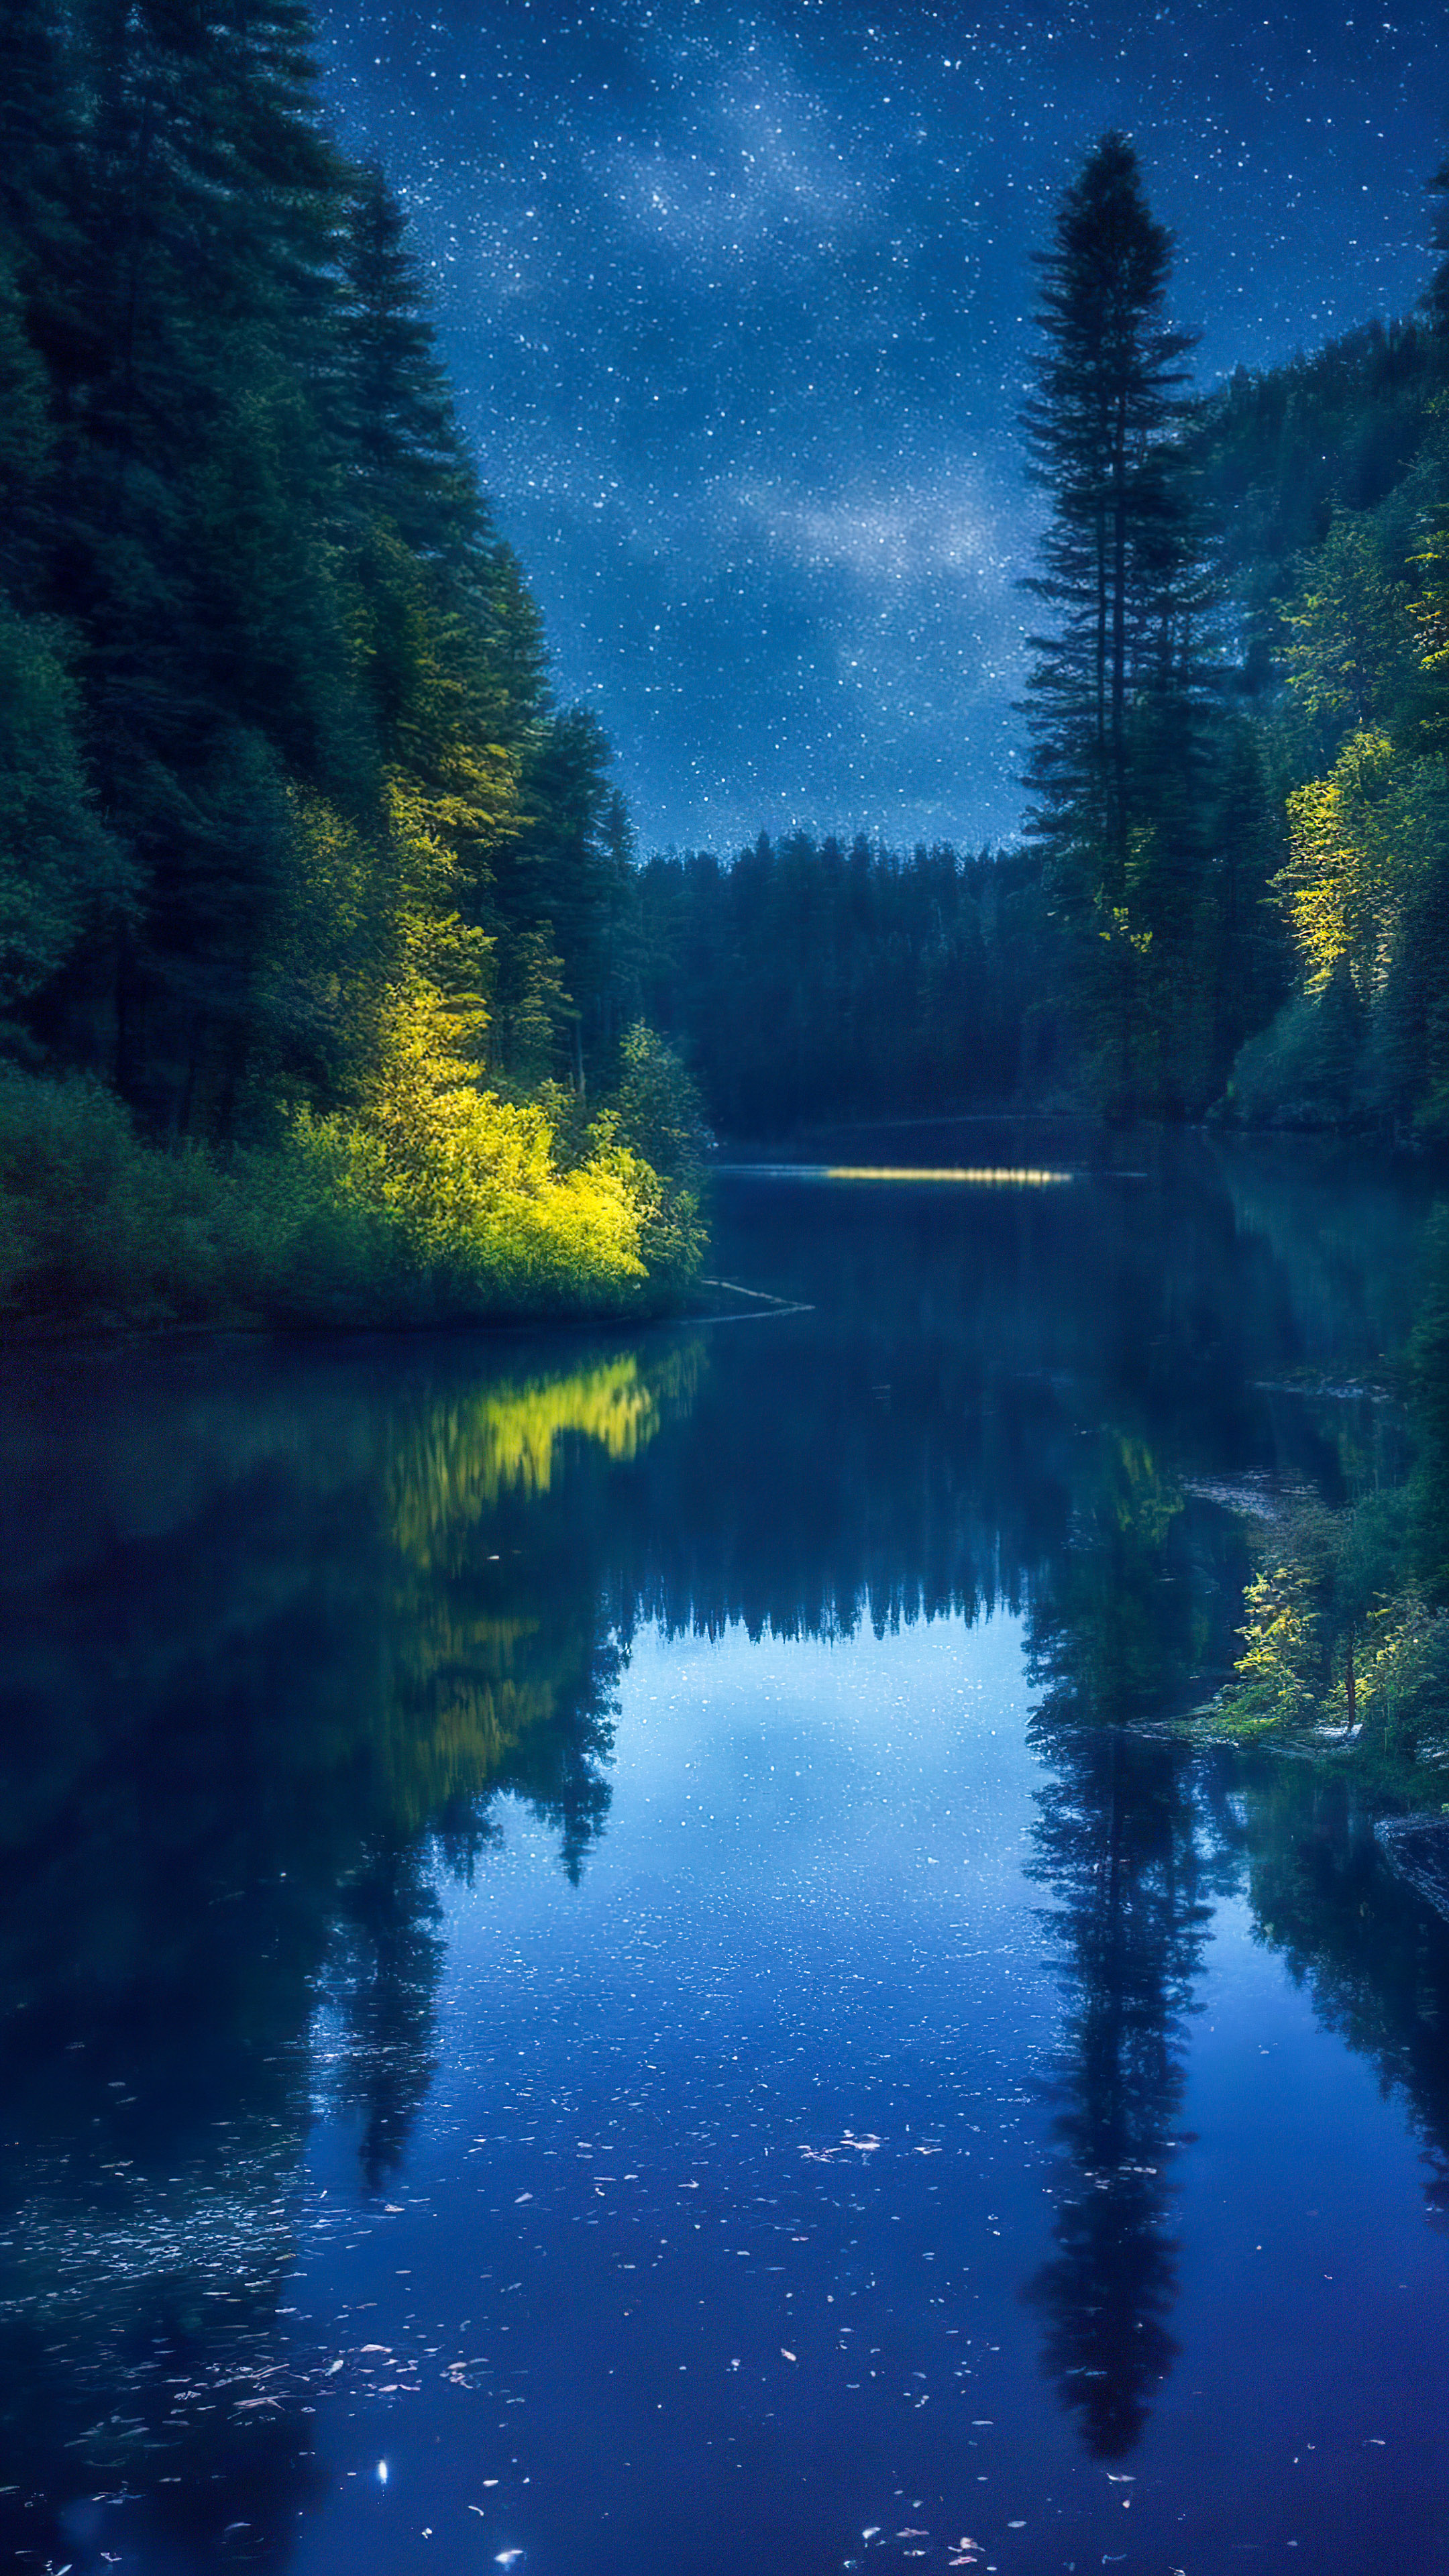 Perdez-vous dans la sérénité avec notre fond d'écran pour mobile, présentant une rivière paisible serpentant à travers une forêt dense la nuit, reflétant le ciel nocturne scintillant.